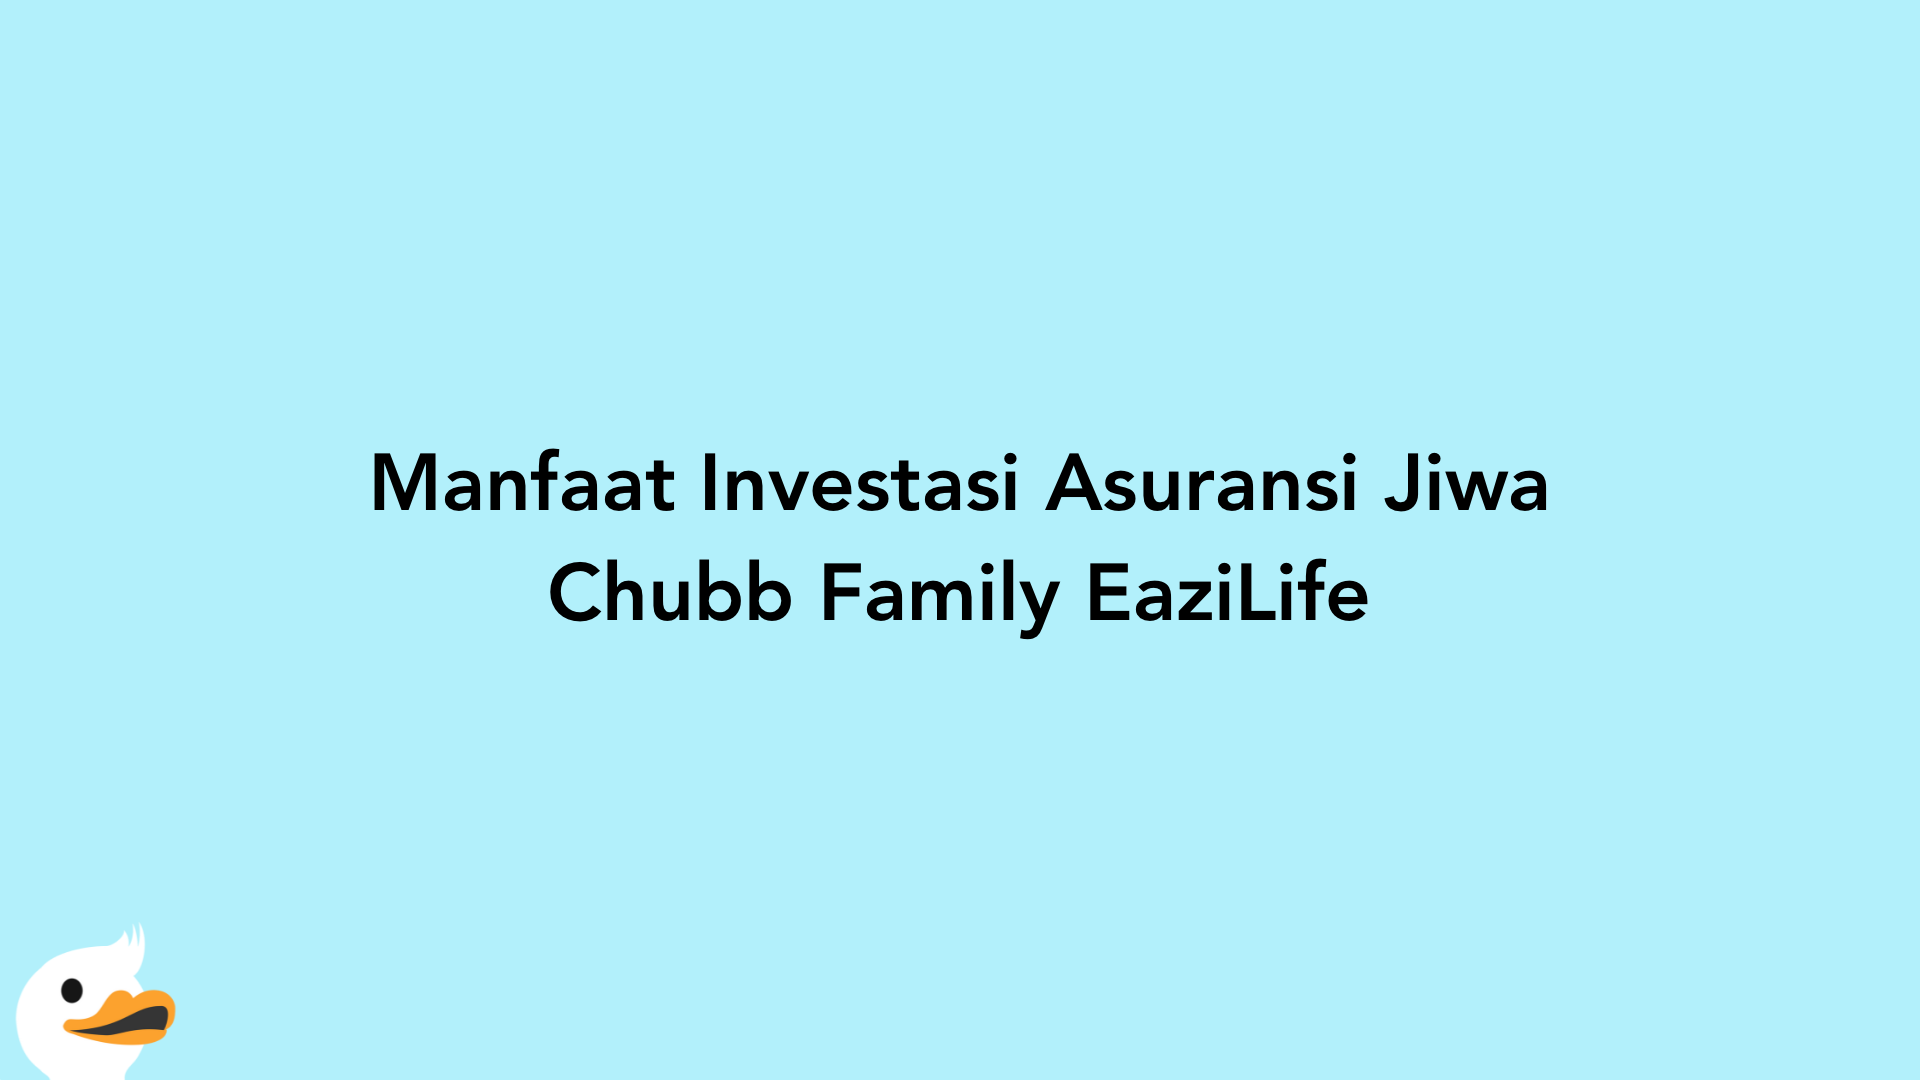 Manfaat Investasi Asuransi Jiwa Chubb Family EaziLife